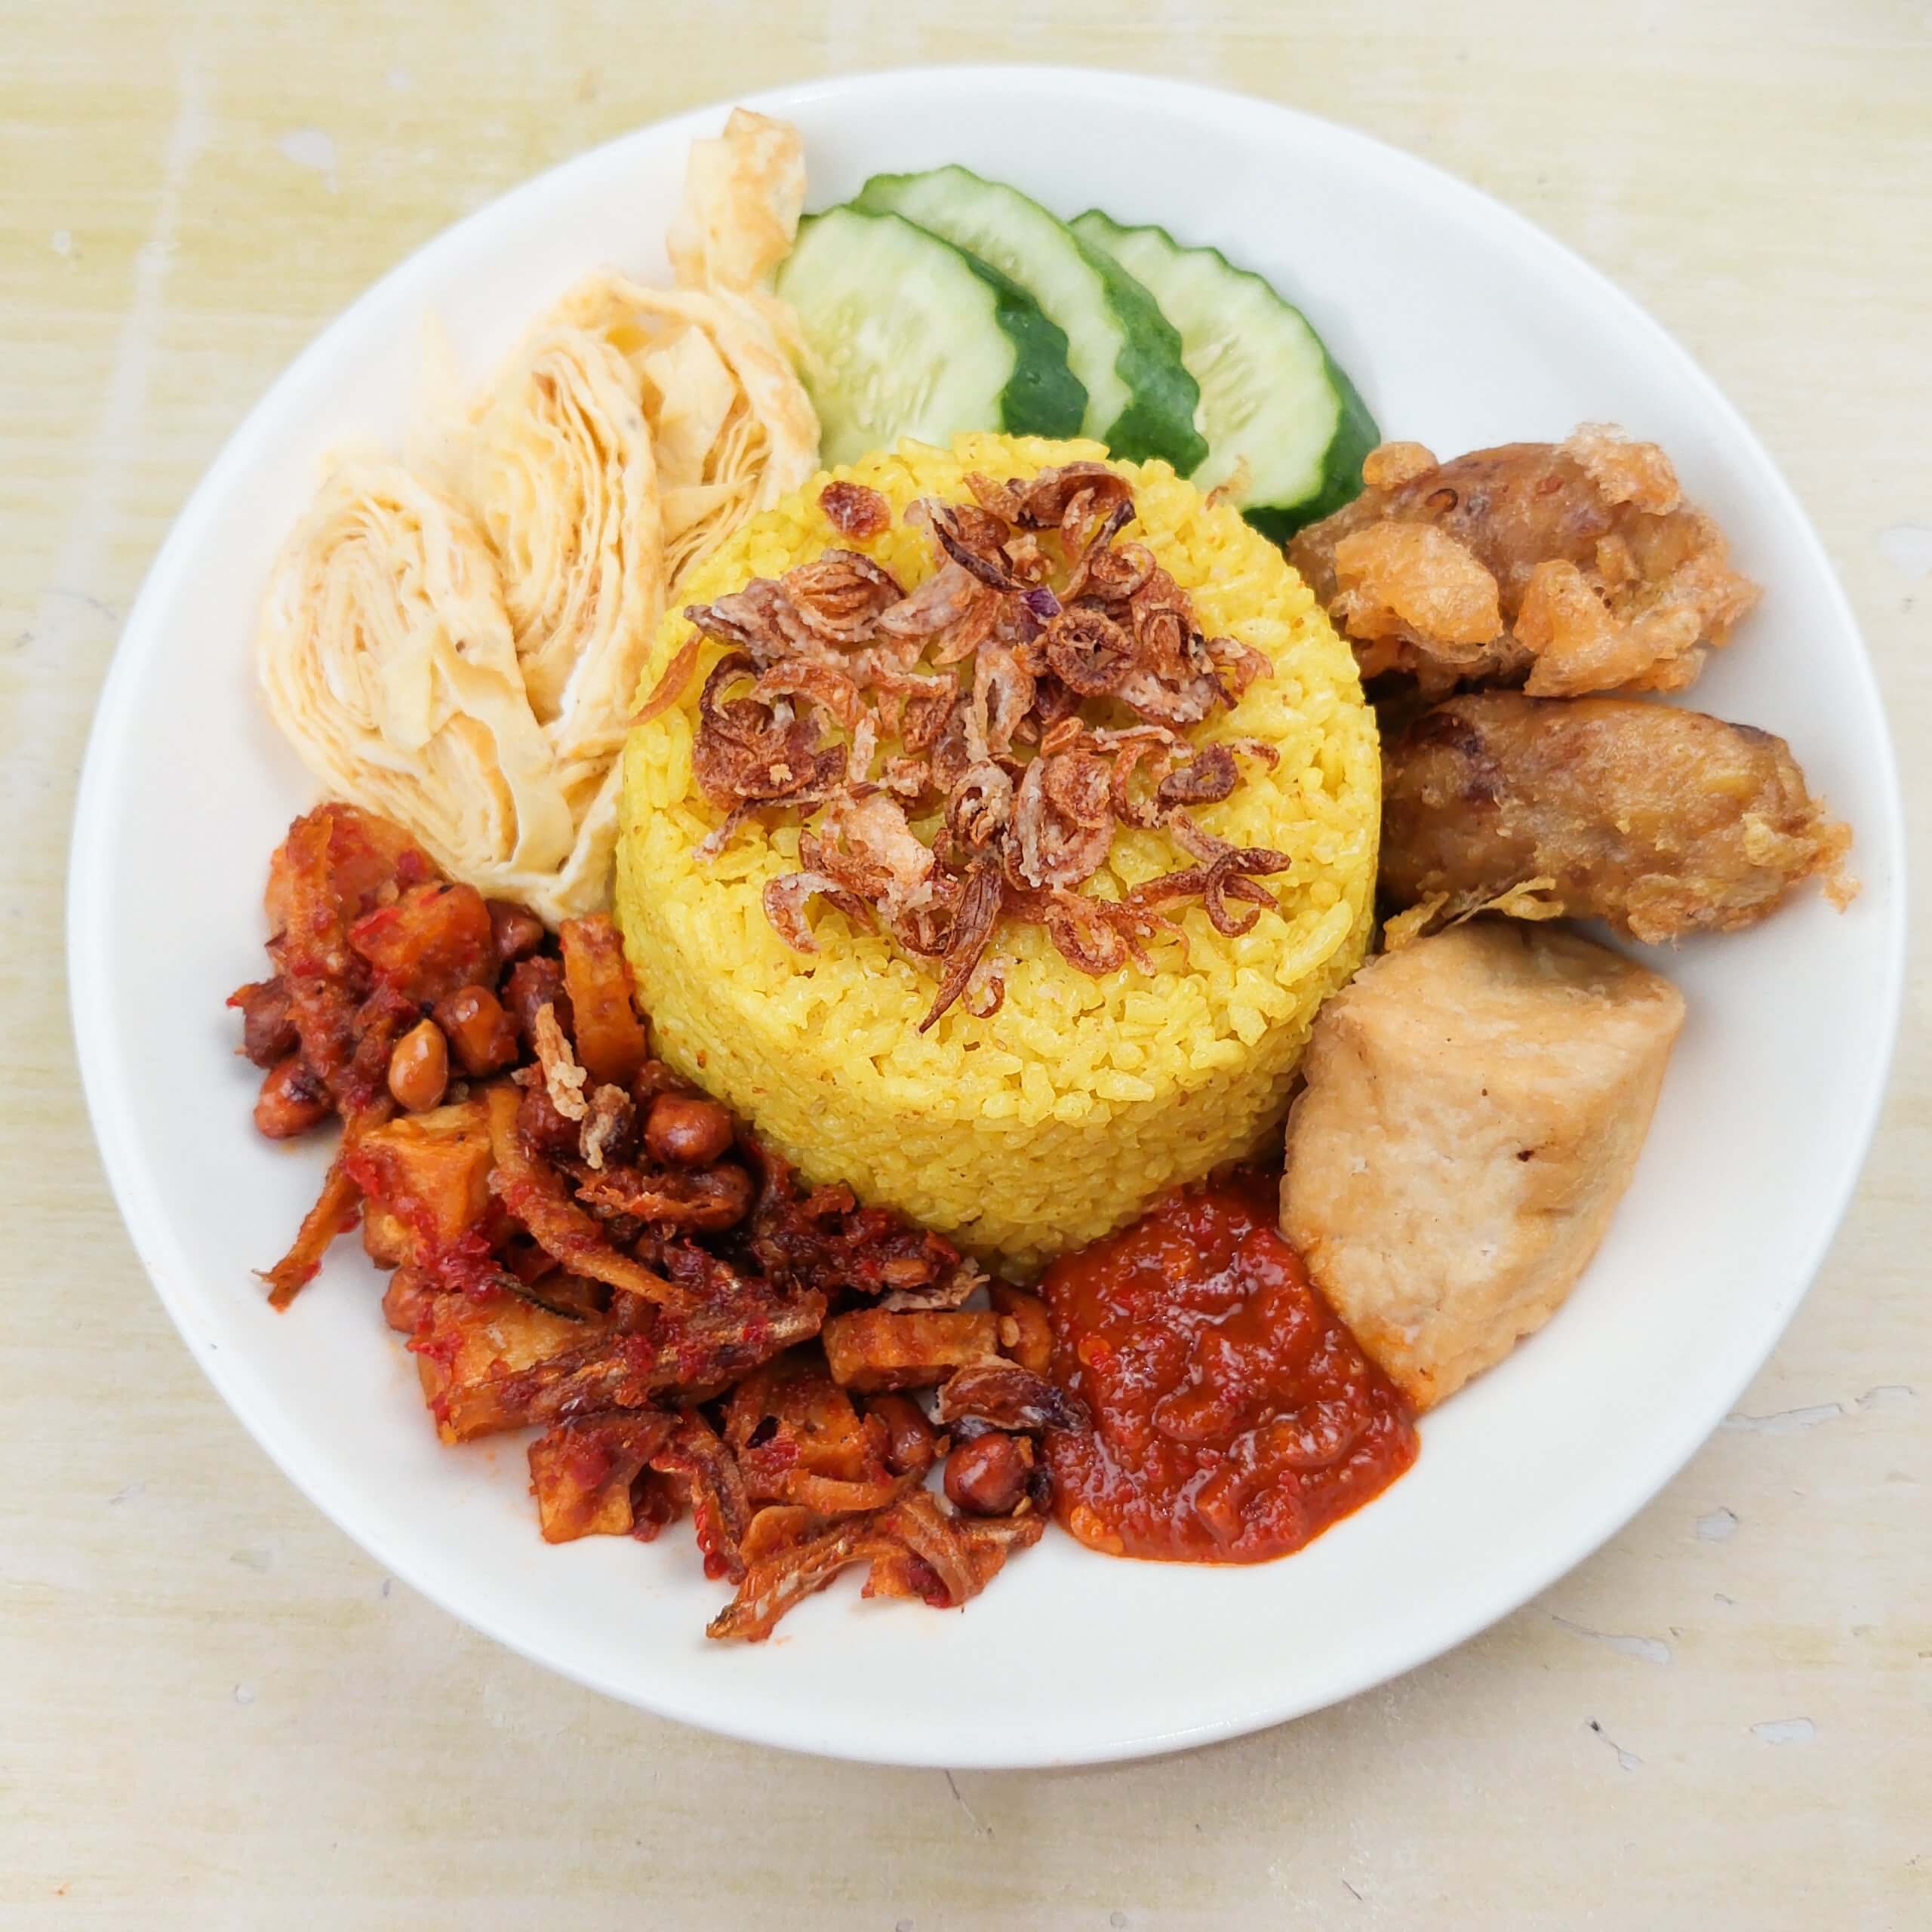 resep nasi kuning rice cooker gurih pulen